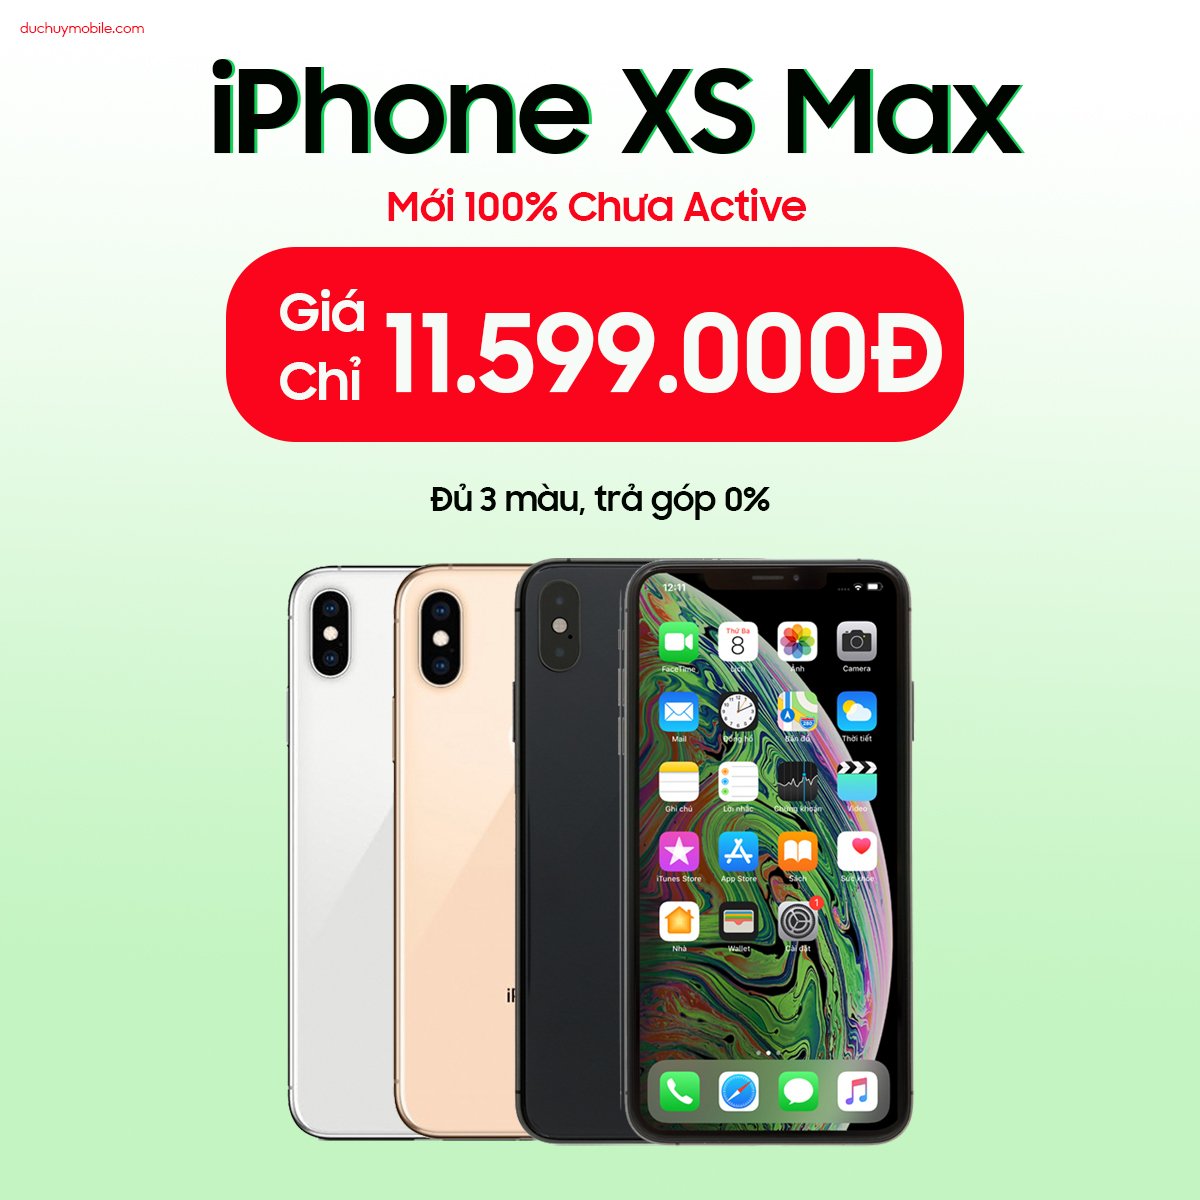 iPhone XS Max giảm giá